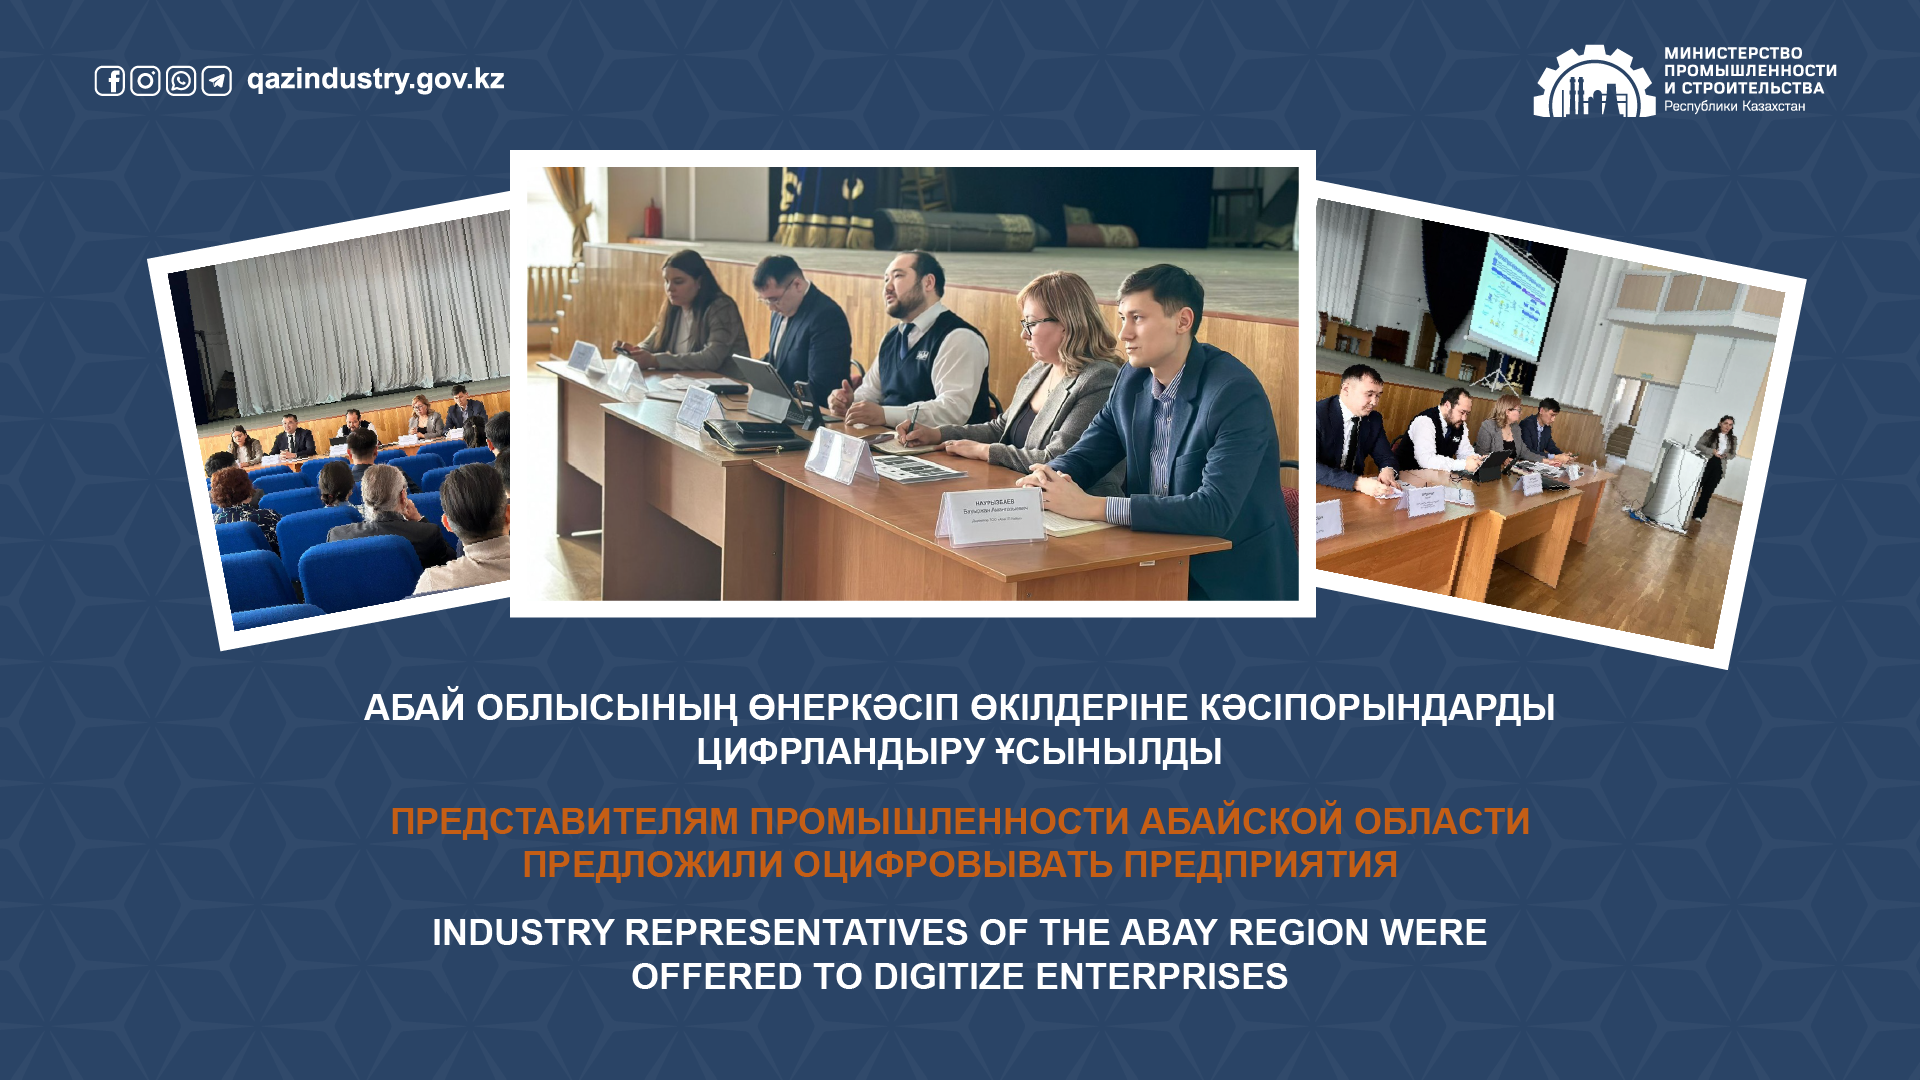 Представителям промышленности Абайской области предложили оцифровывать предприятия